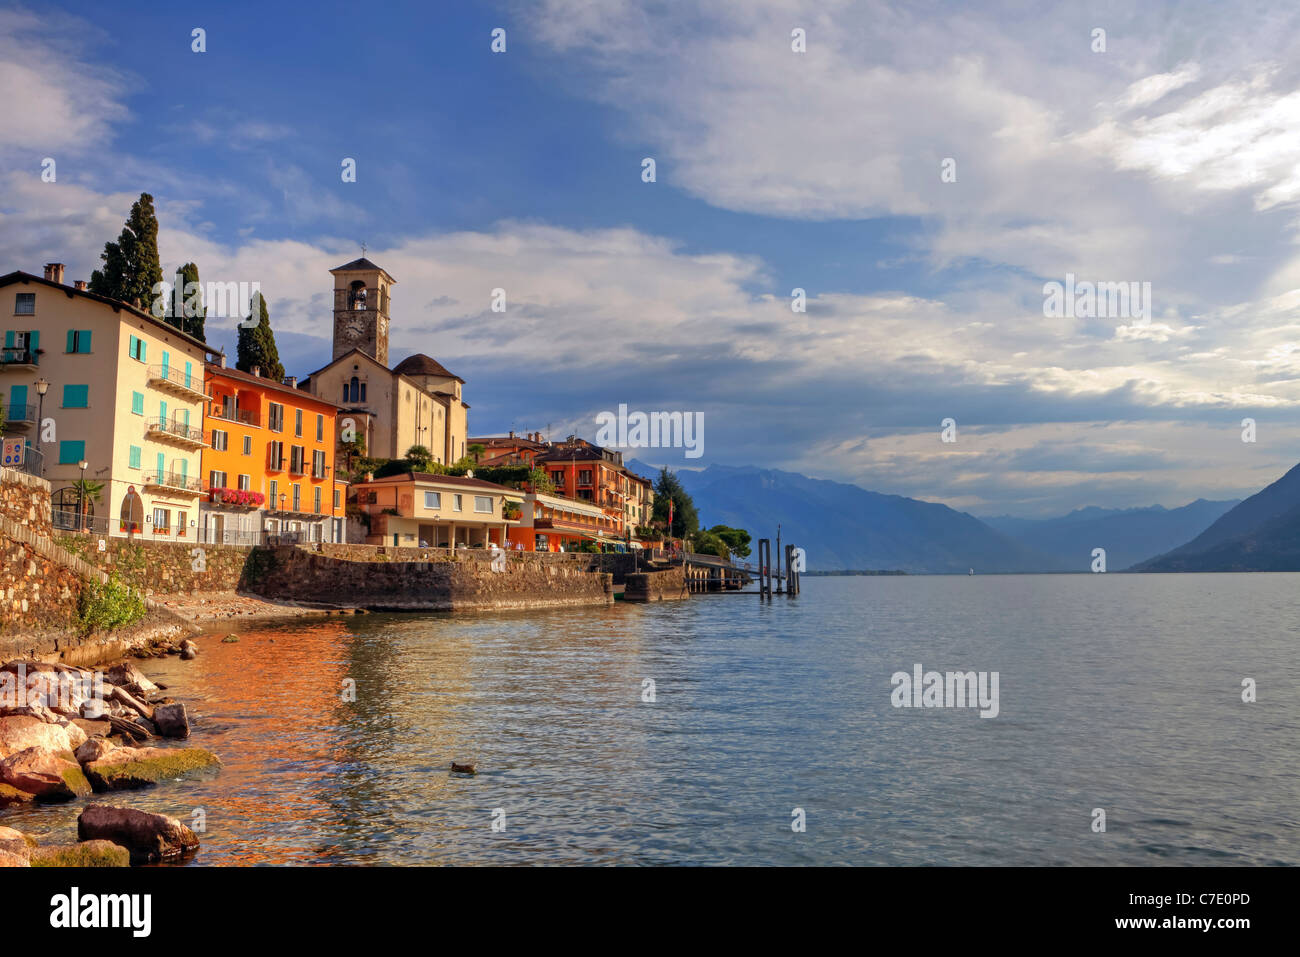 Cityscape of Brissago in Ticino, Switzerland Stock Photo